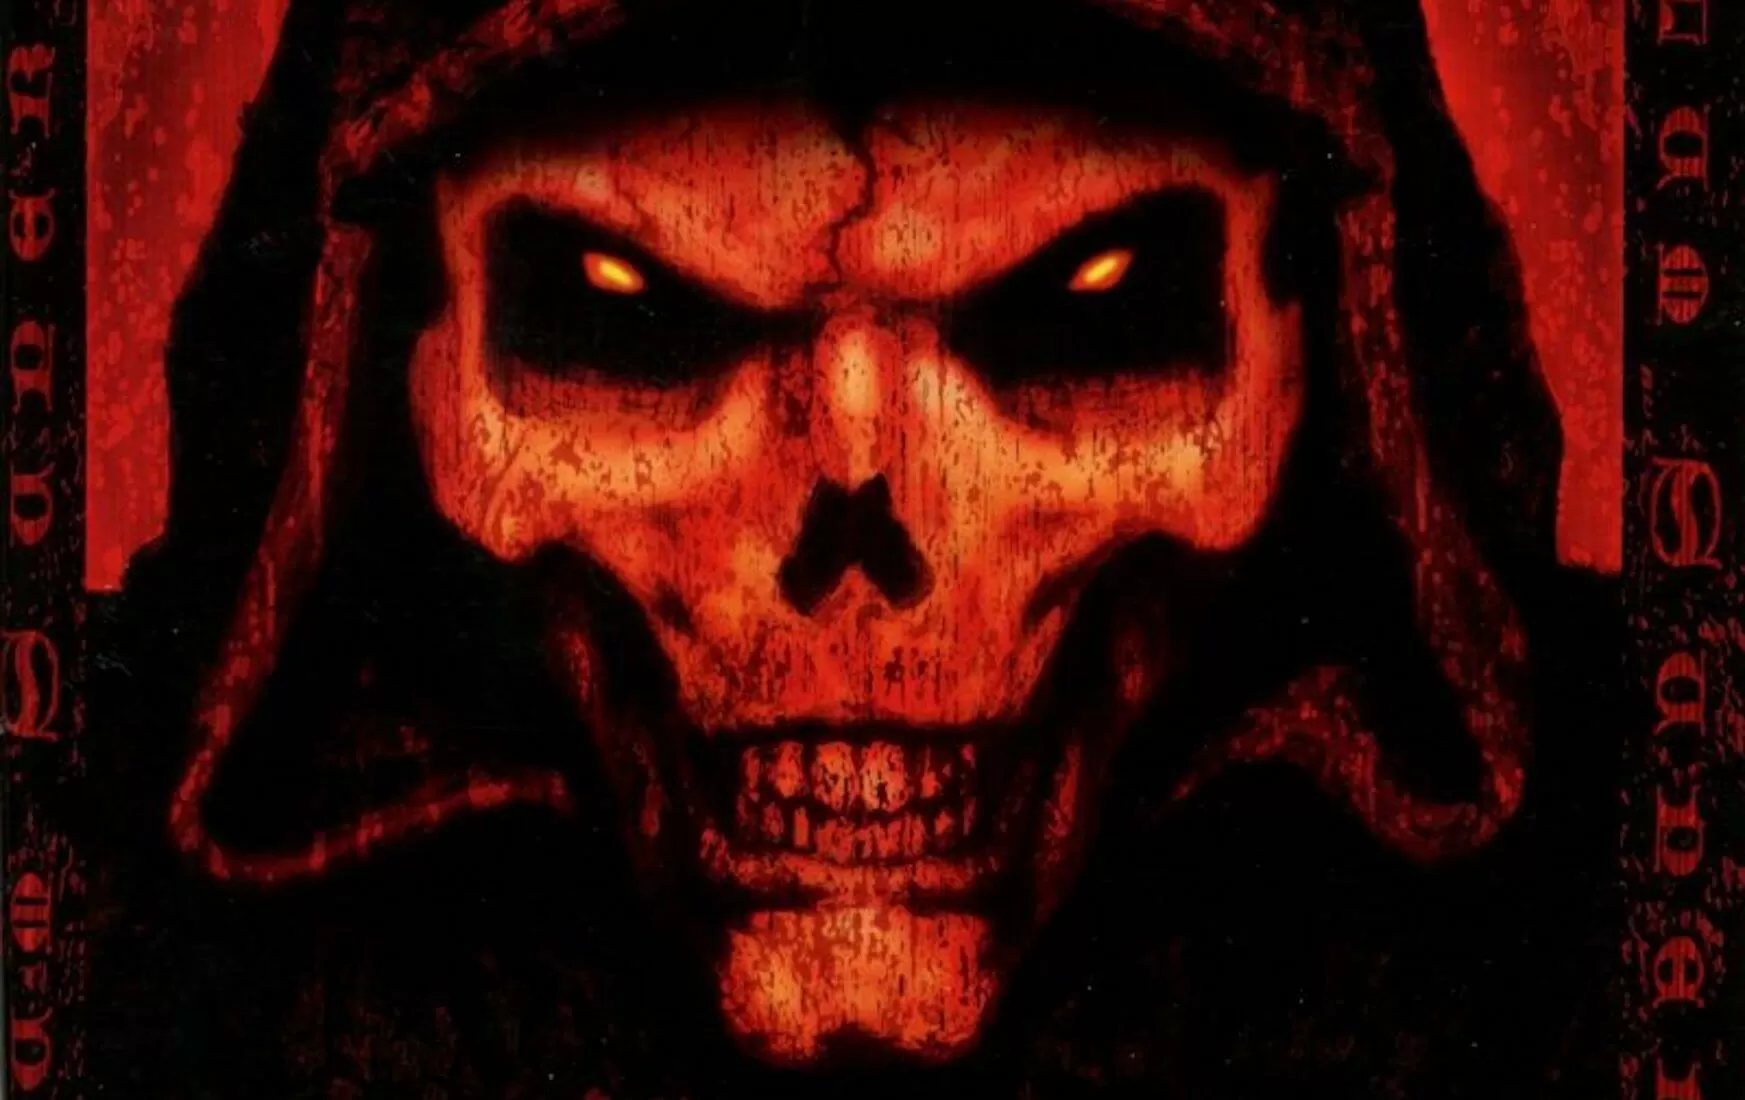 Diablo 2 speedrunner scores legendary Zod rune, trolls audience by immediately selling it